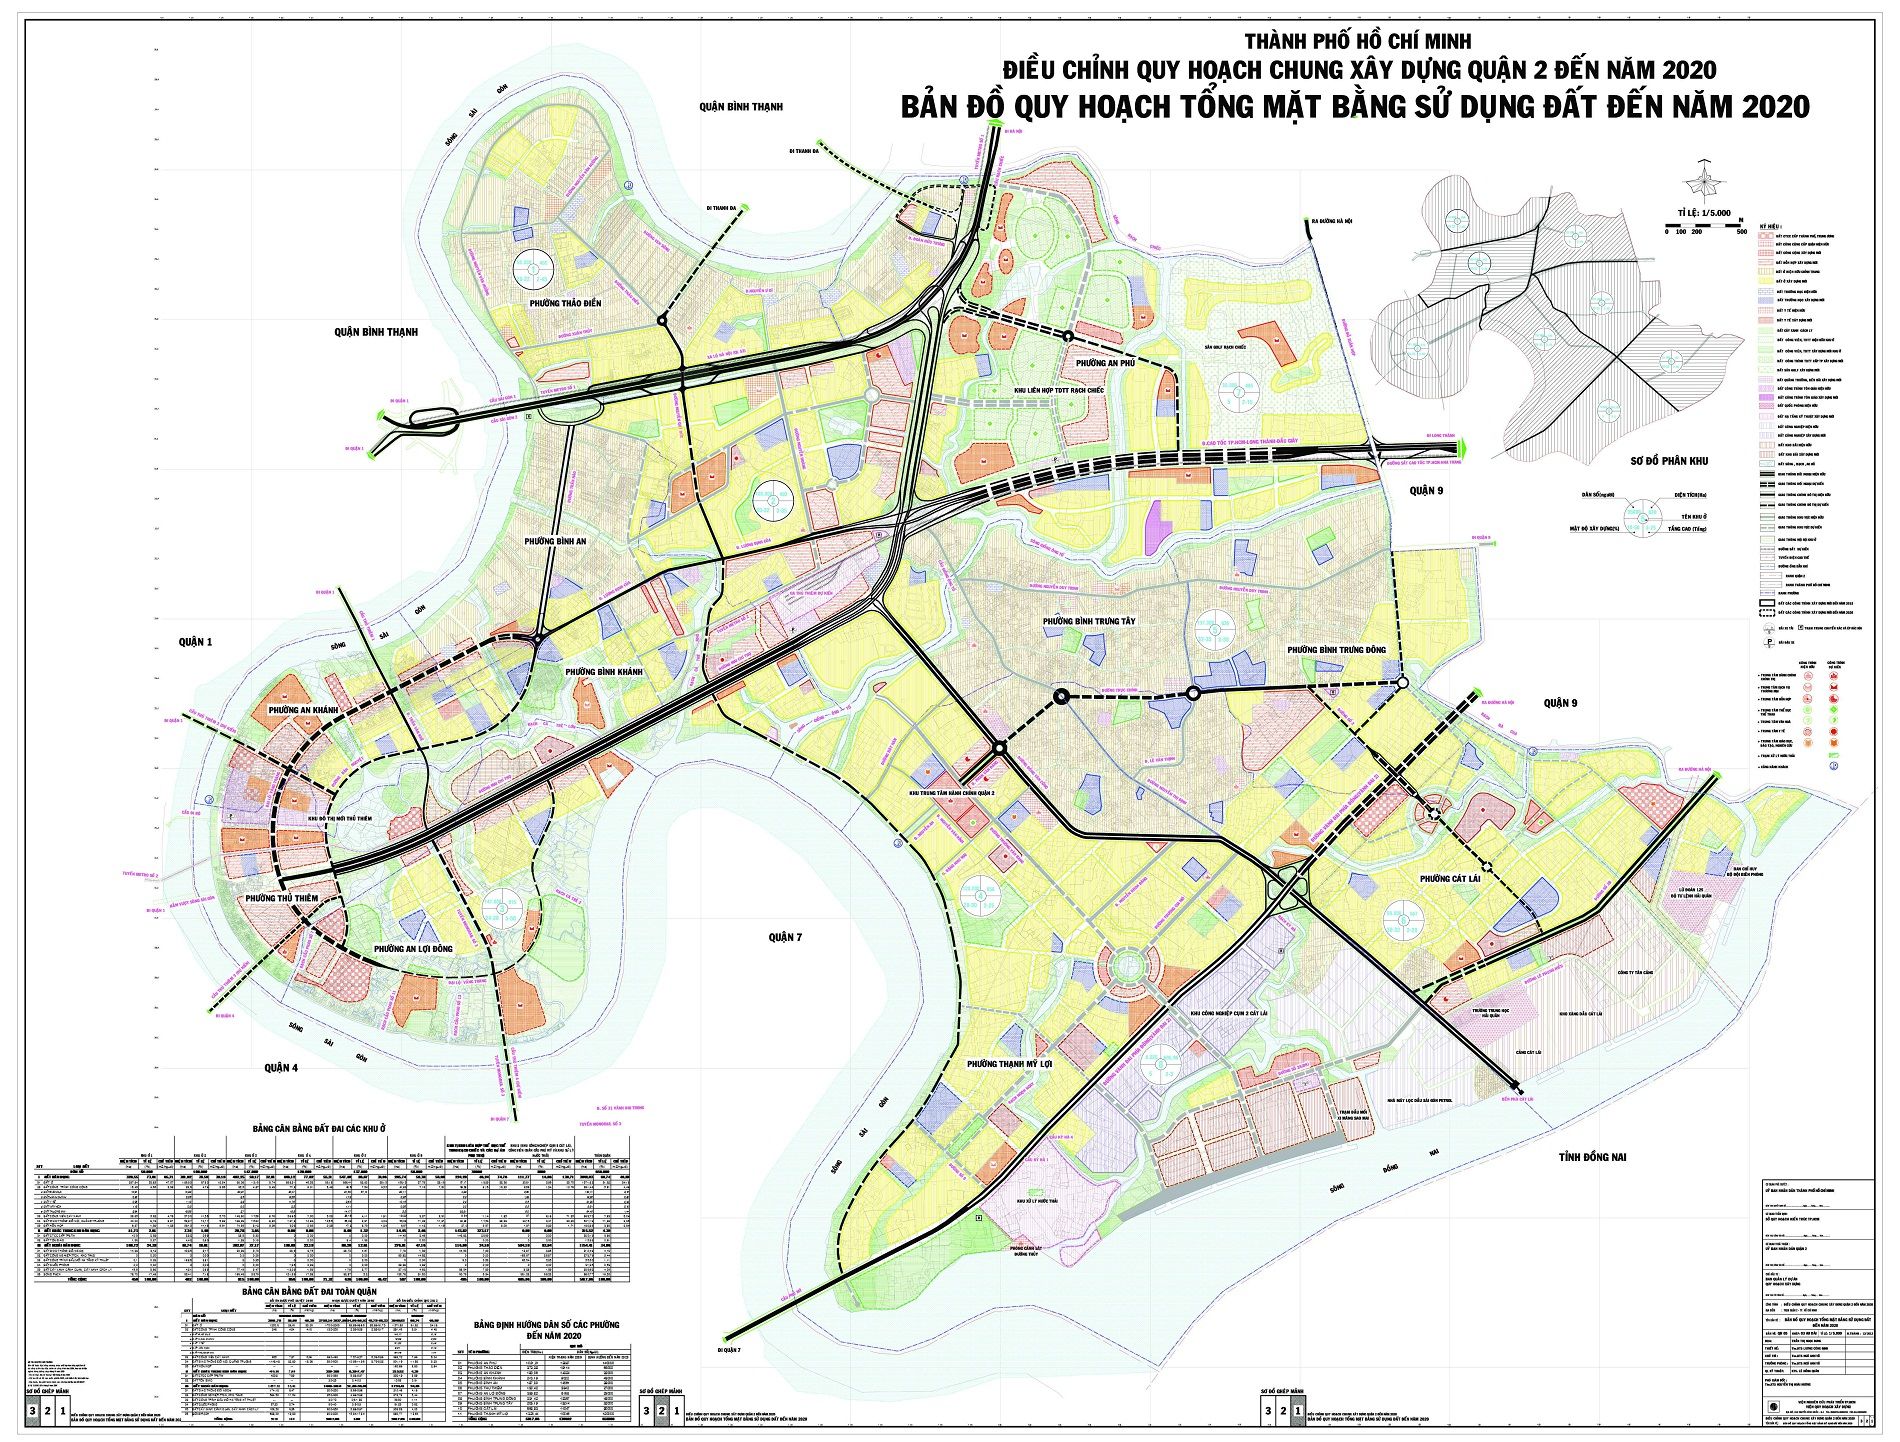 Xem bản đồ, tra cứu thông tin quy hoạch Quận 2 TPHCM đến năm 2020